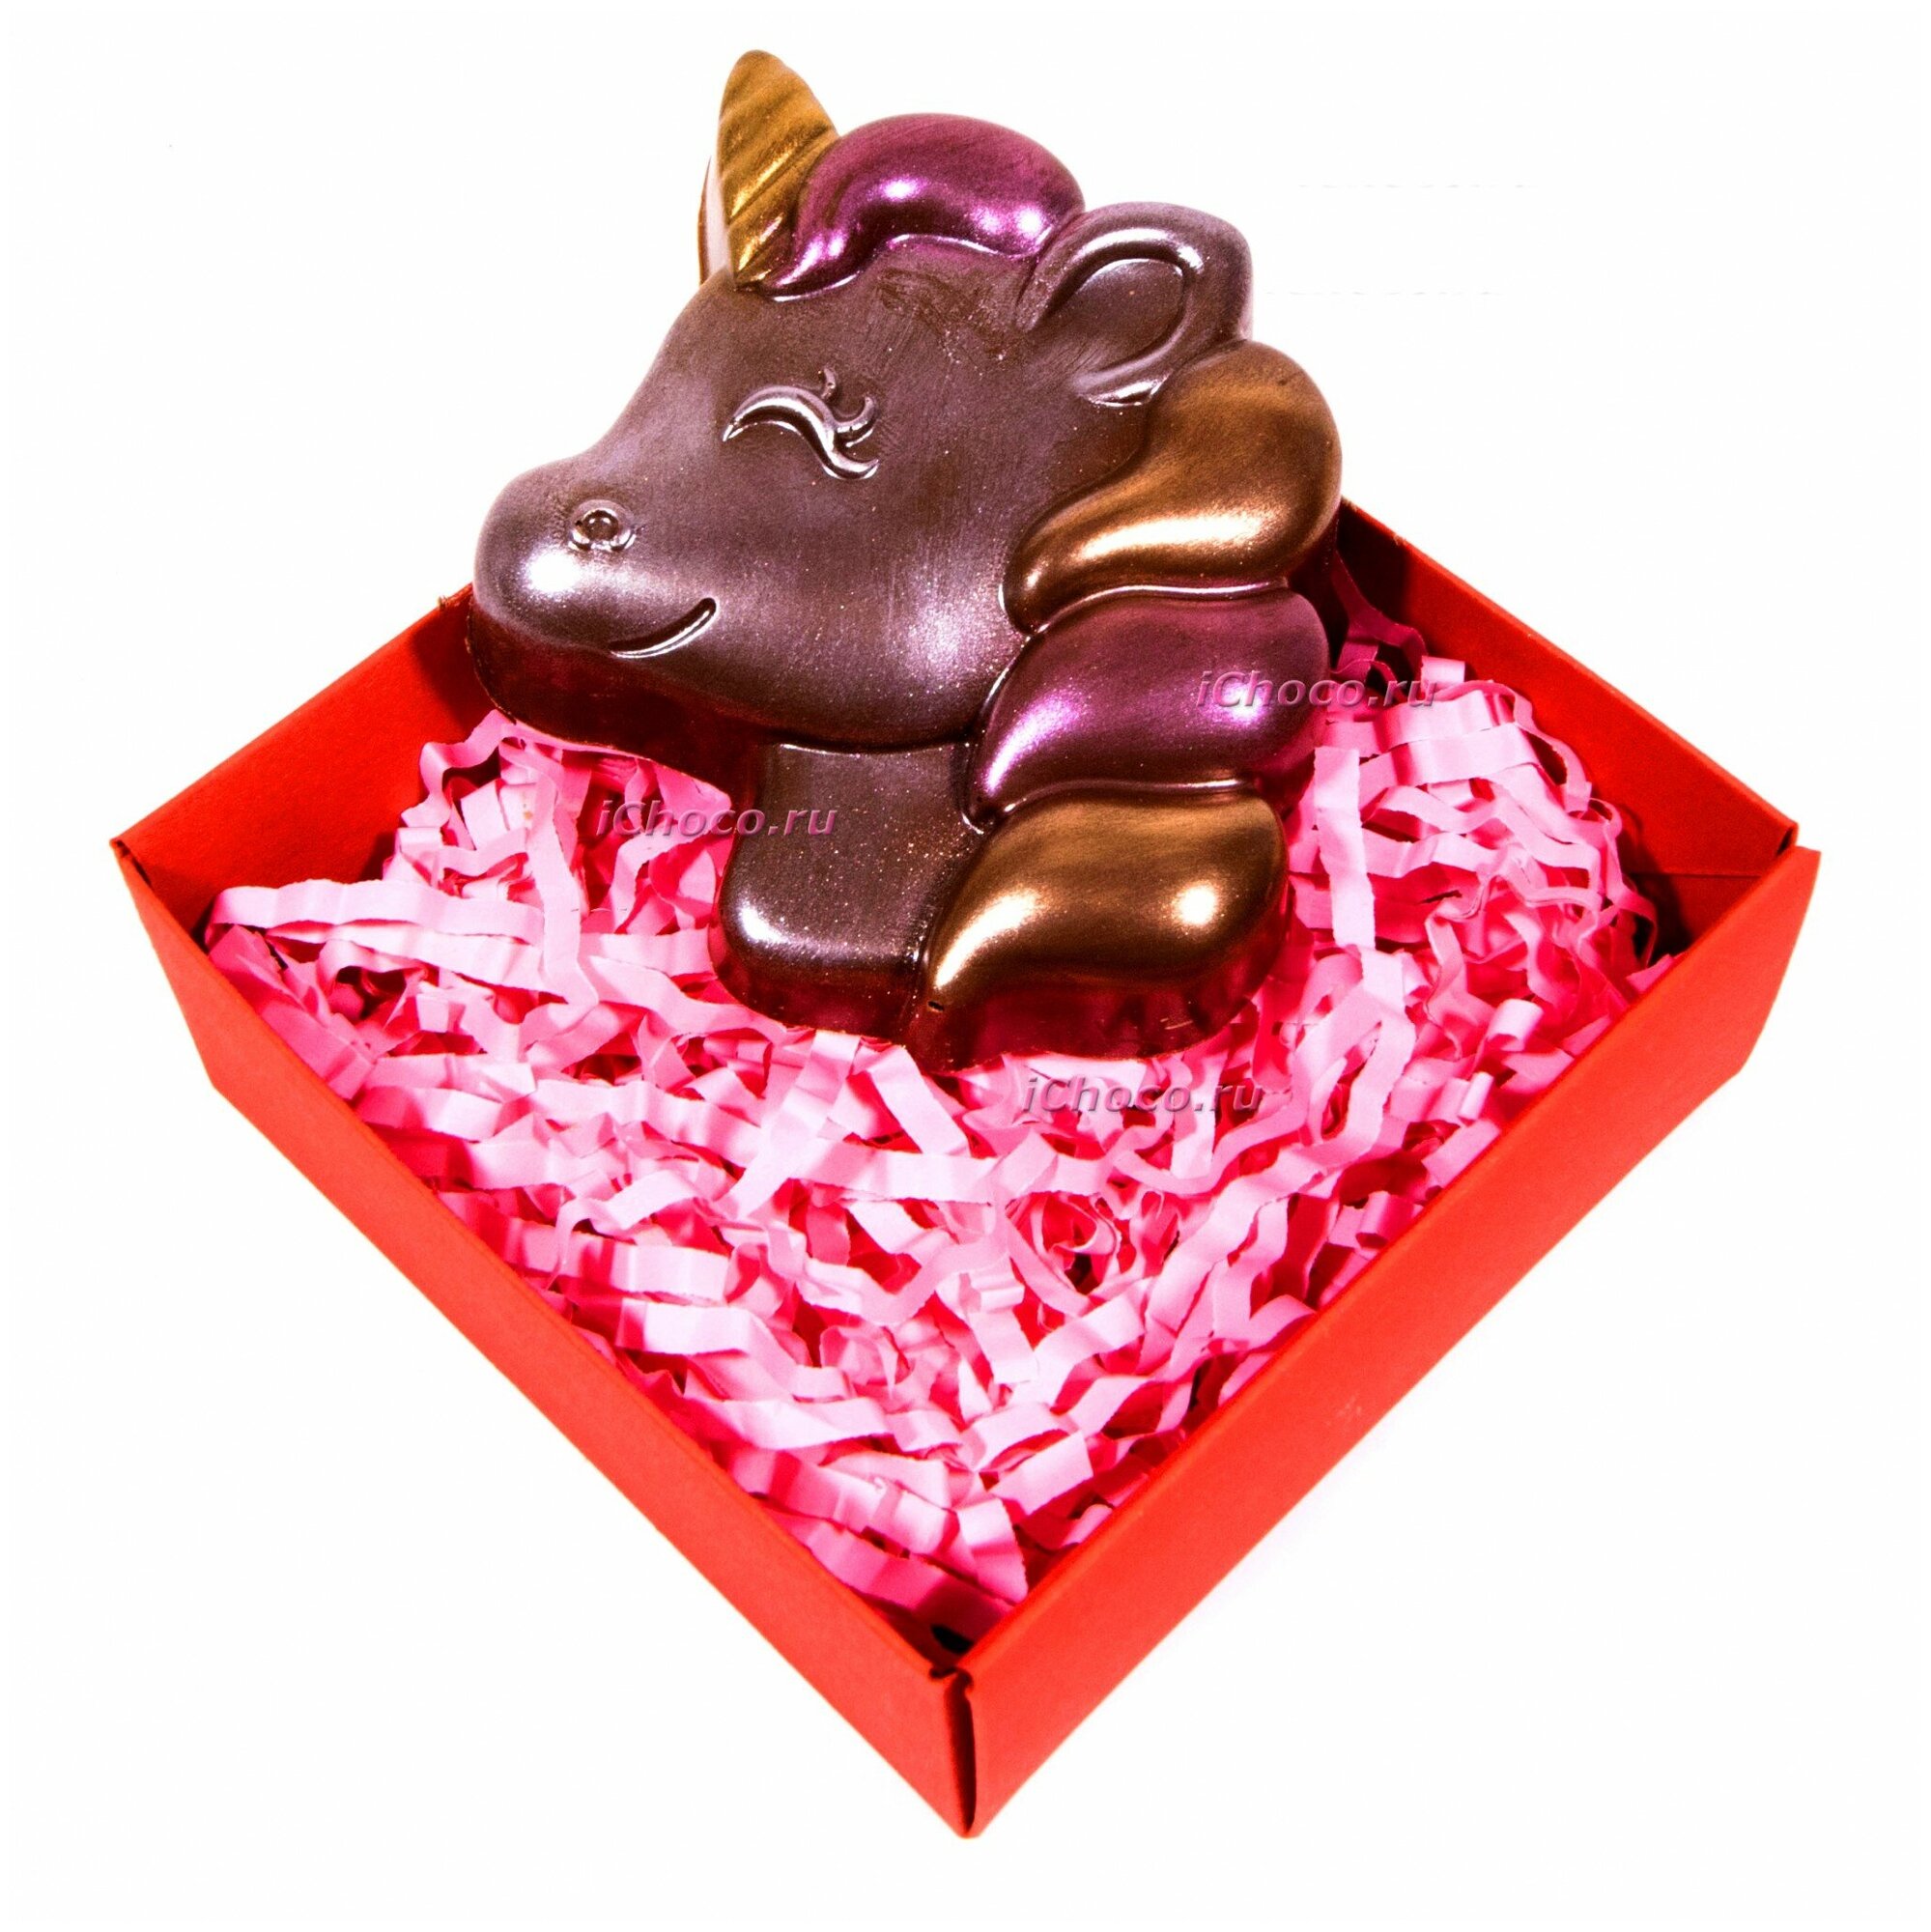 Шоколадная фигурка из бельгийского шоколада "Единорог"